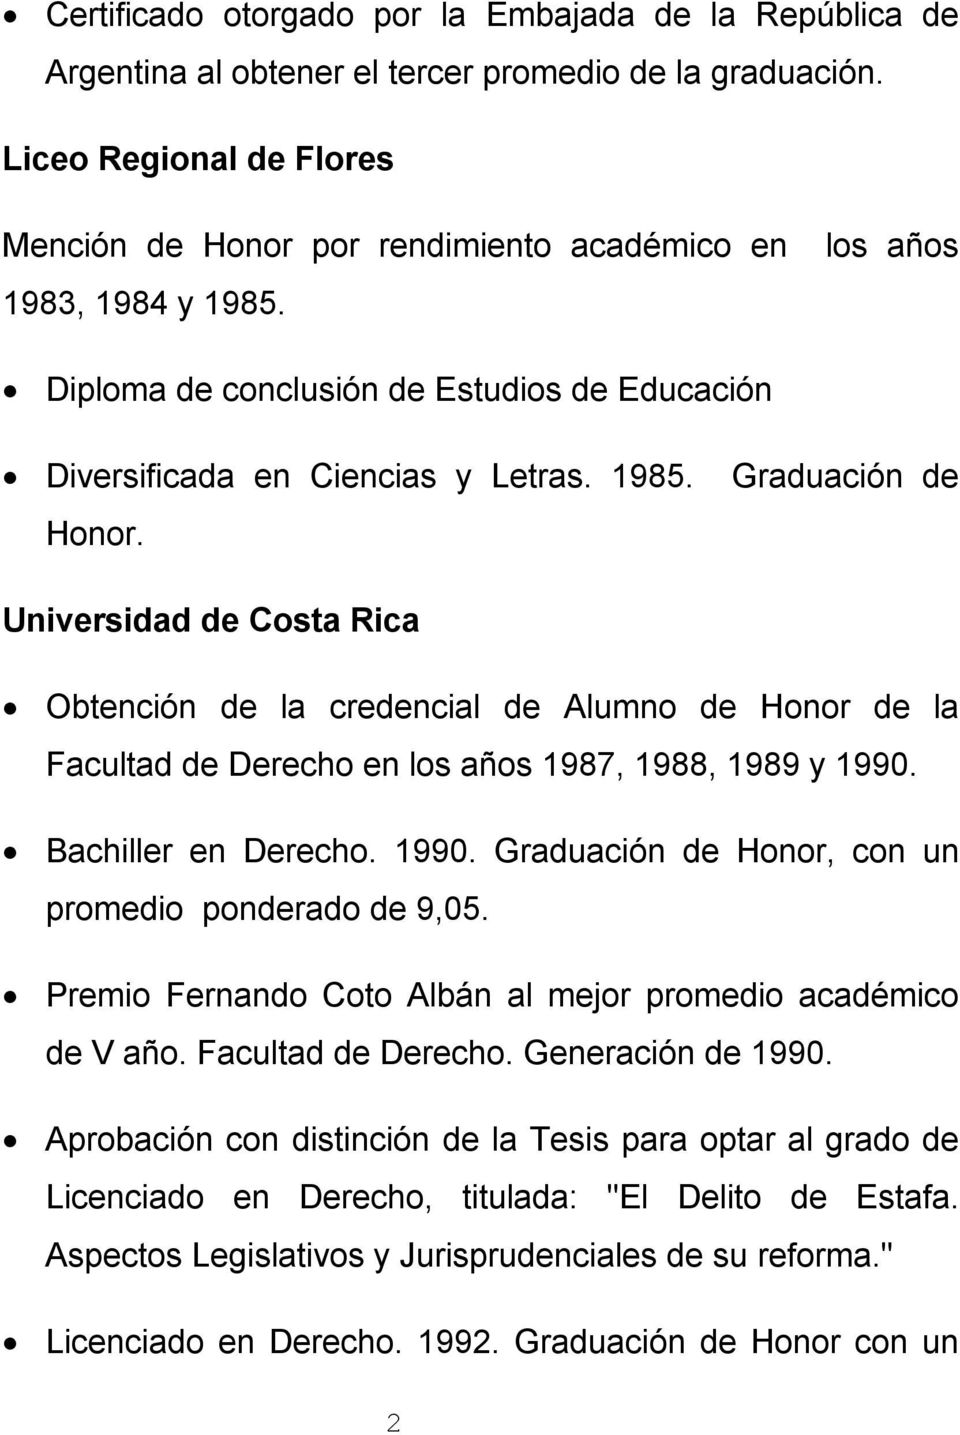 Bachiller en Derecho. 1990. Graduación de Honor, con un promedio ponderado de 9,05. Premio Fernando Coto Albán al mejor promedio académico de V año. Facultad de Derecho. Generación de 1990.